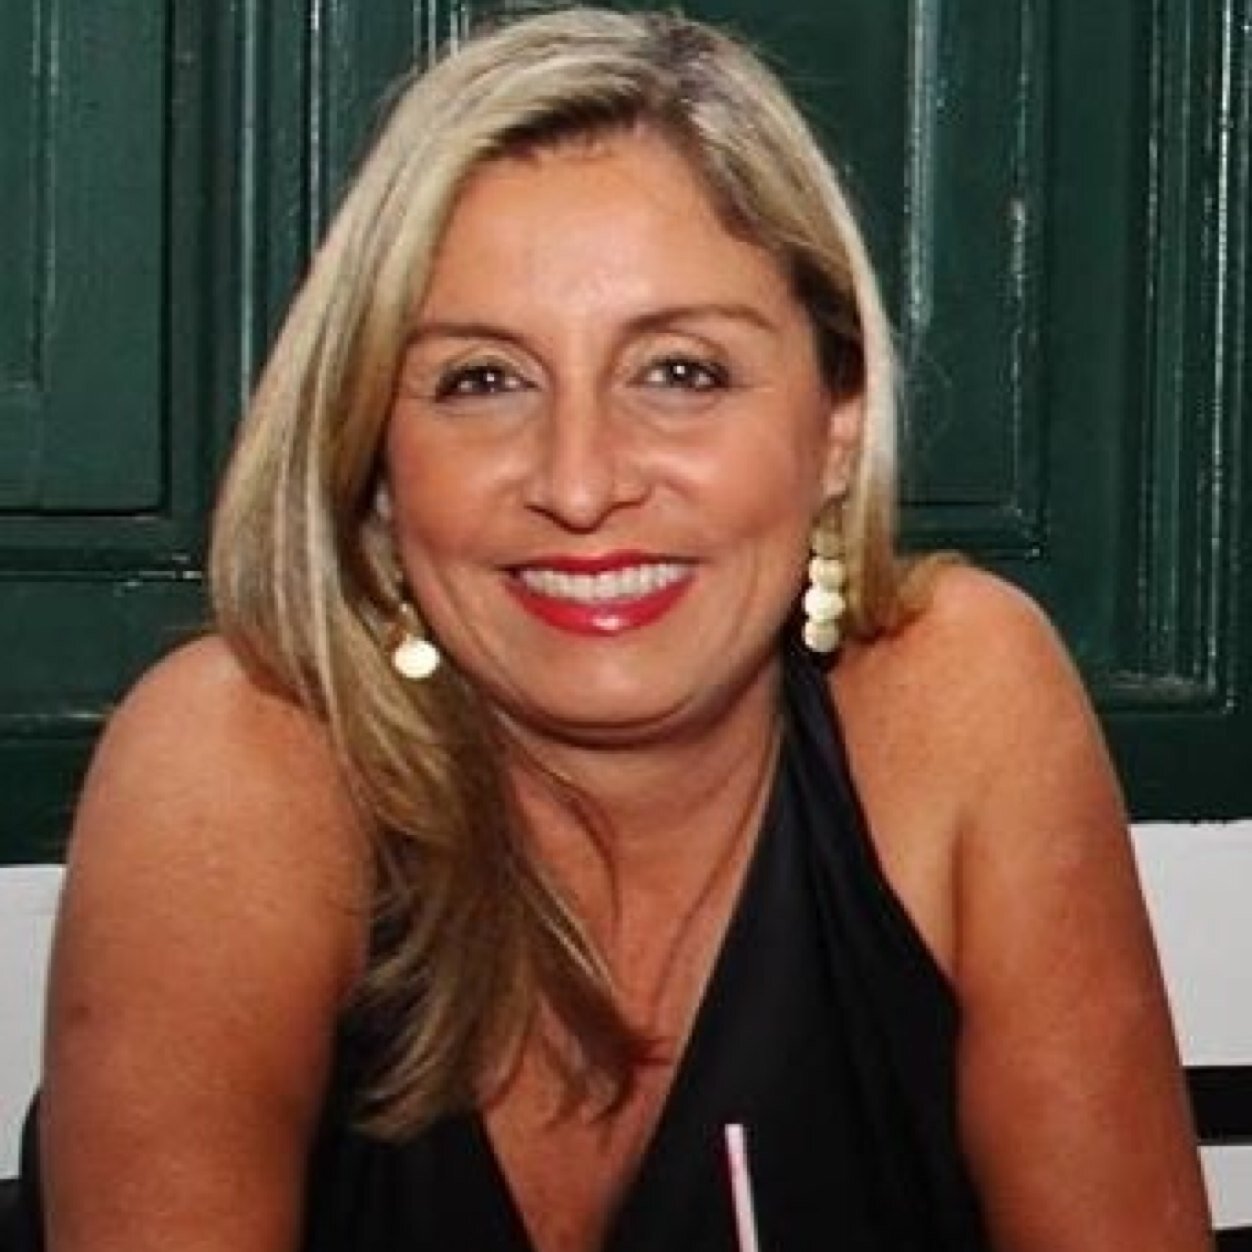 Sócia fundadora da Roda Viva Comunicação, apresentadora do programa Gente do Rio da Band Rio TV, especialista em gestão de crise e de imagem